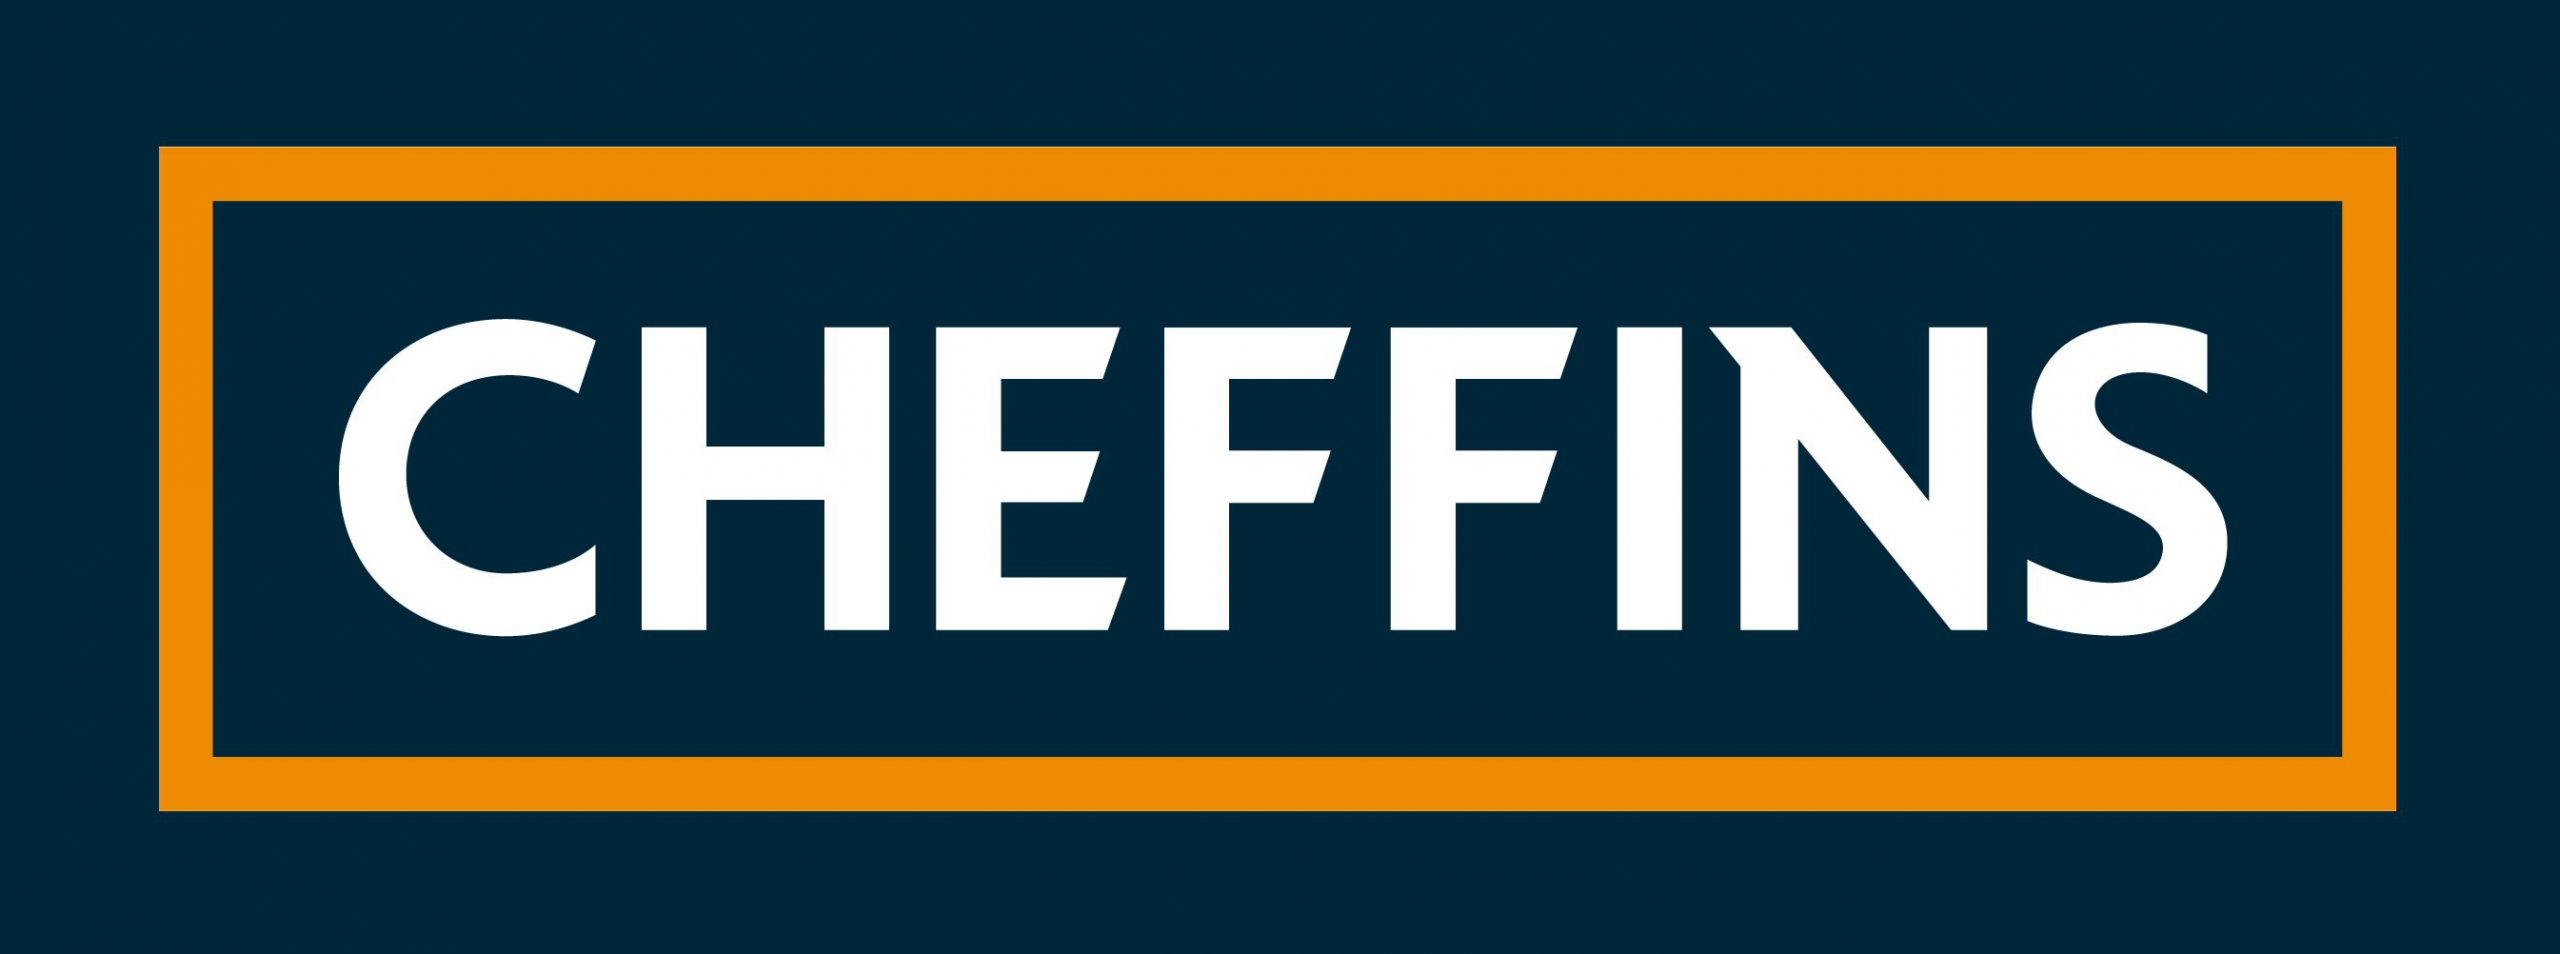 Cheffins's logo